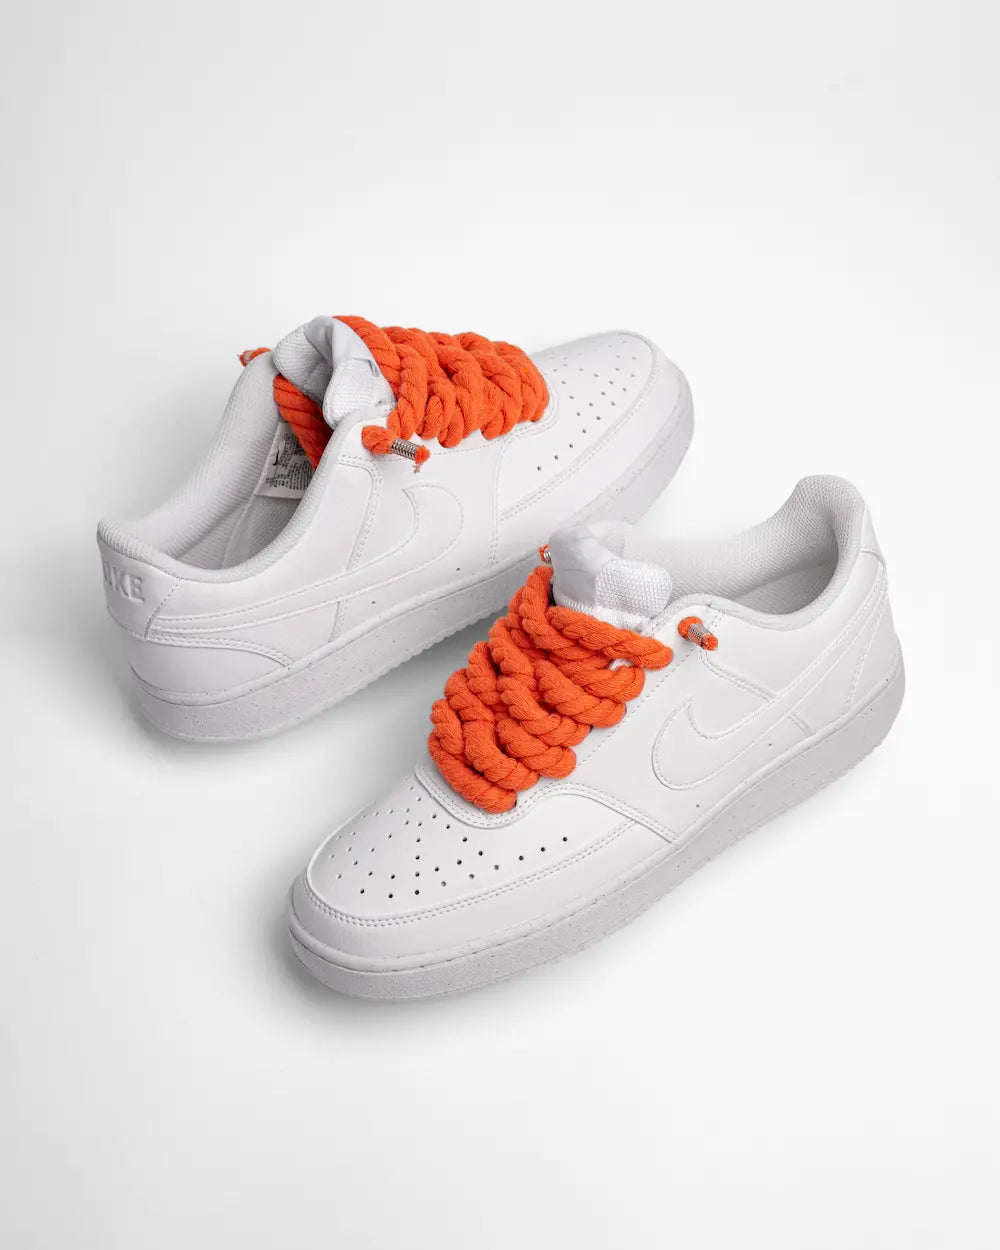 Nike Court Vision personalizzata con lacci in corda arancione